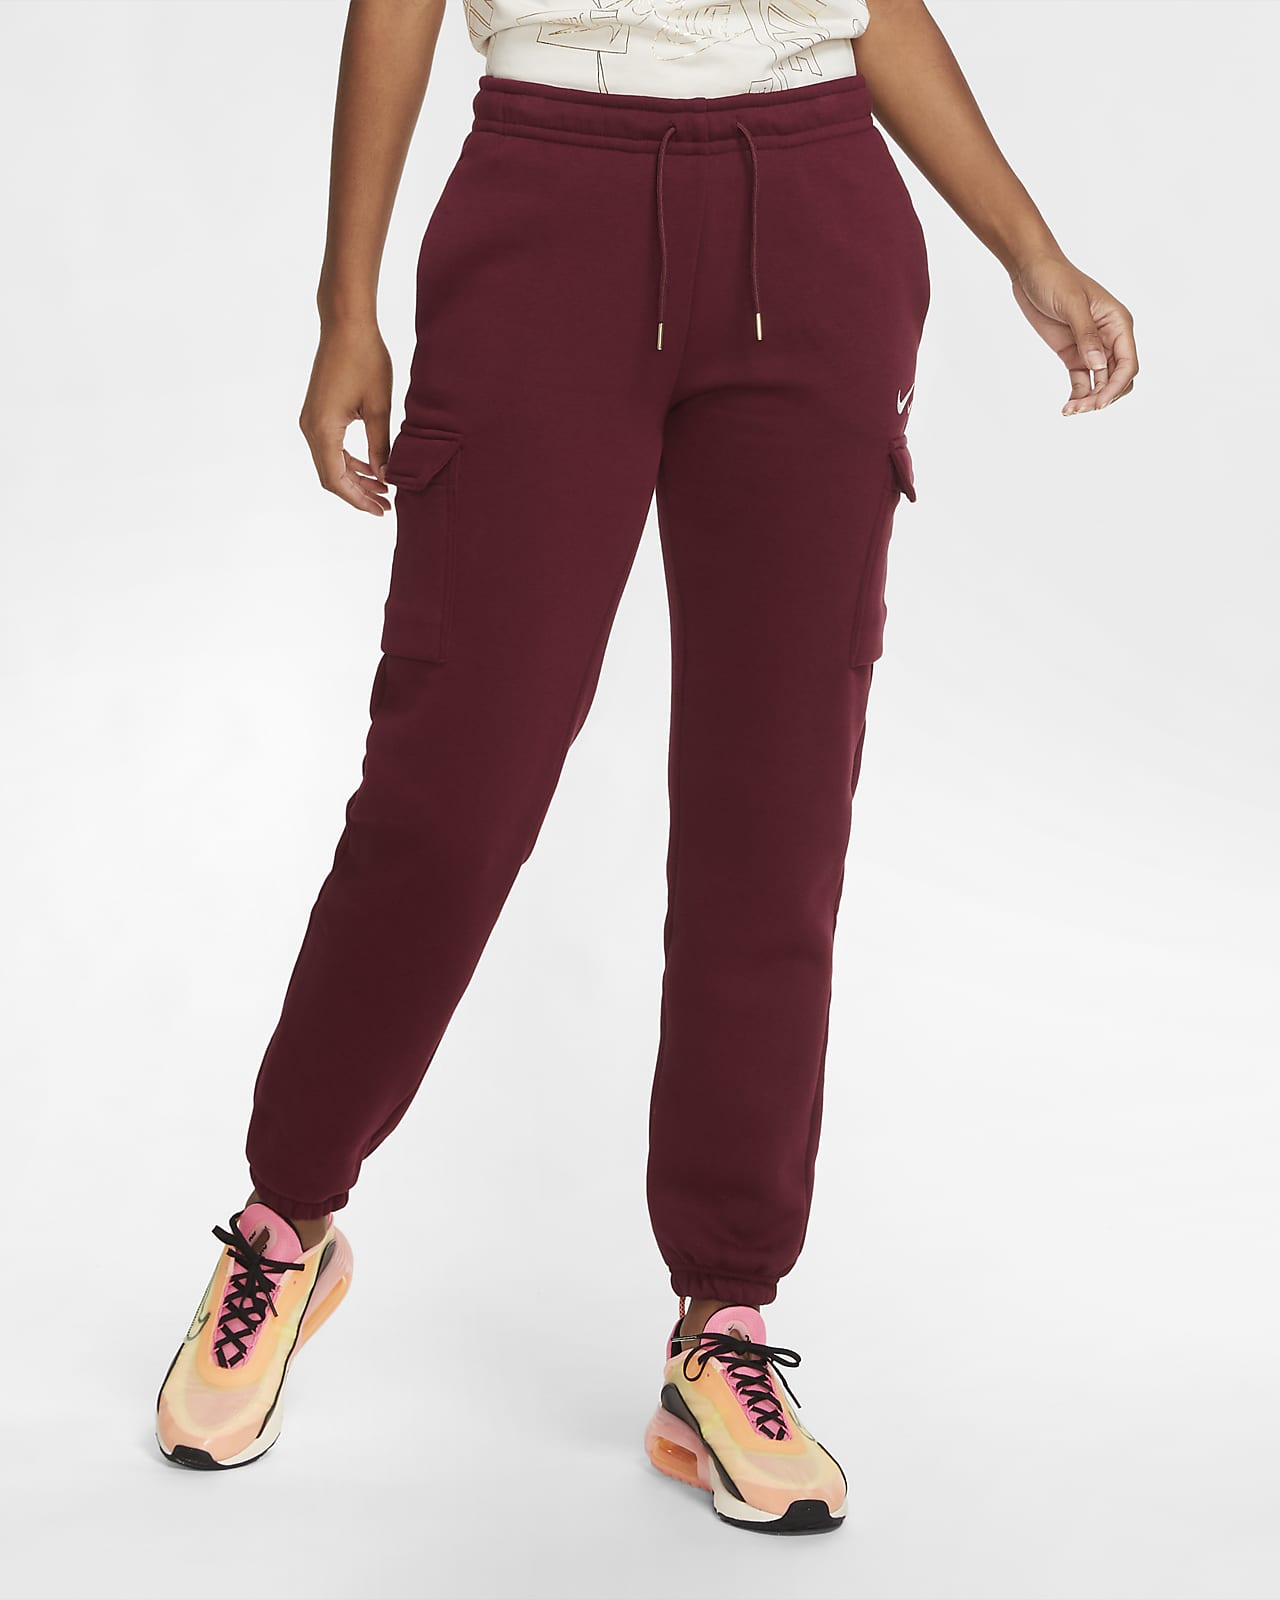 Nike Sportswear Women's Loose-Fit Fleece Cargo Trousers. Nike LU